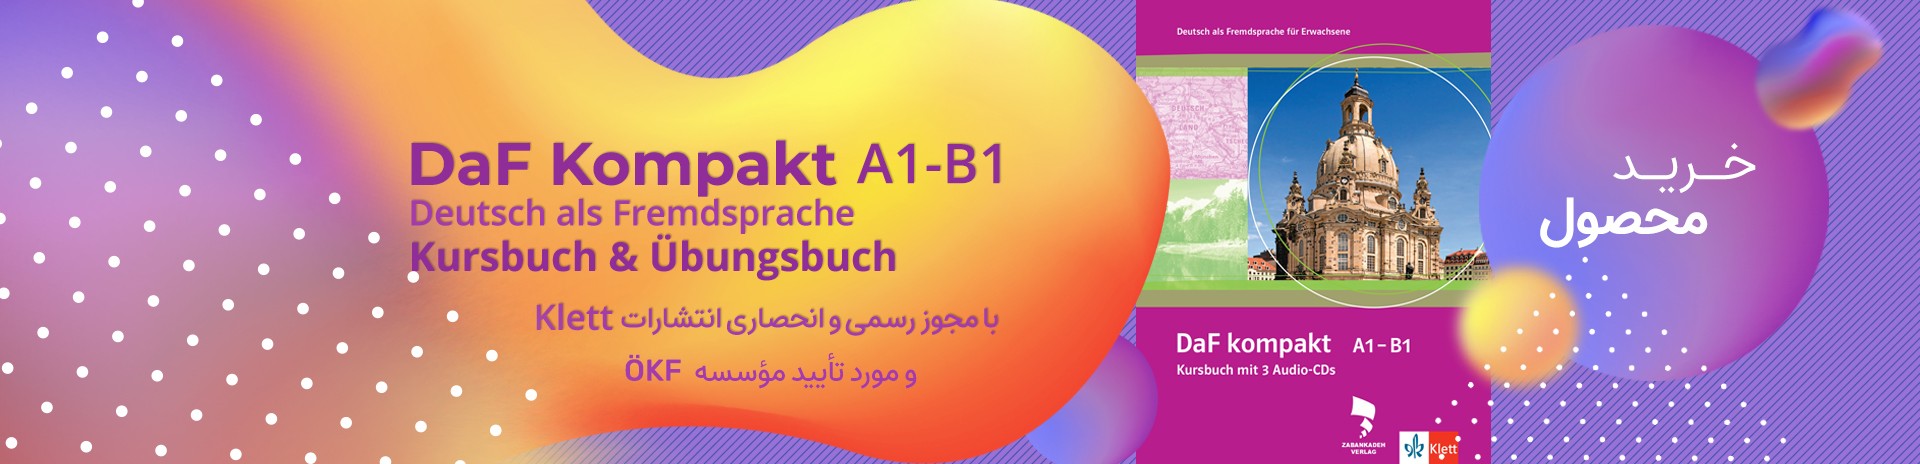 Daf Kompakt A1-B1